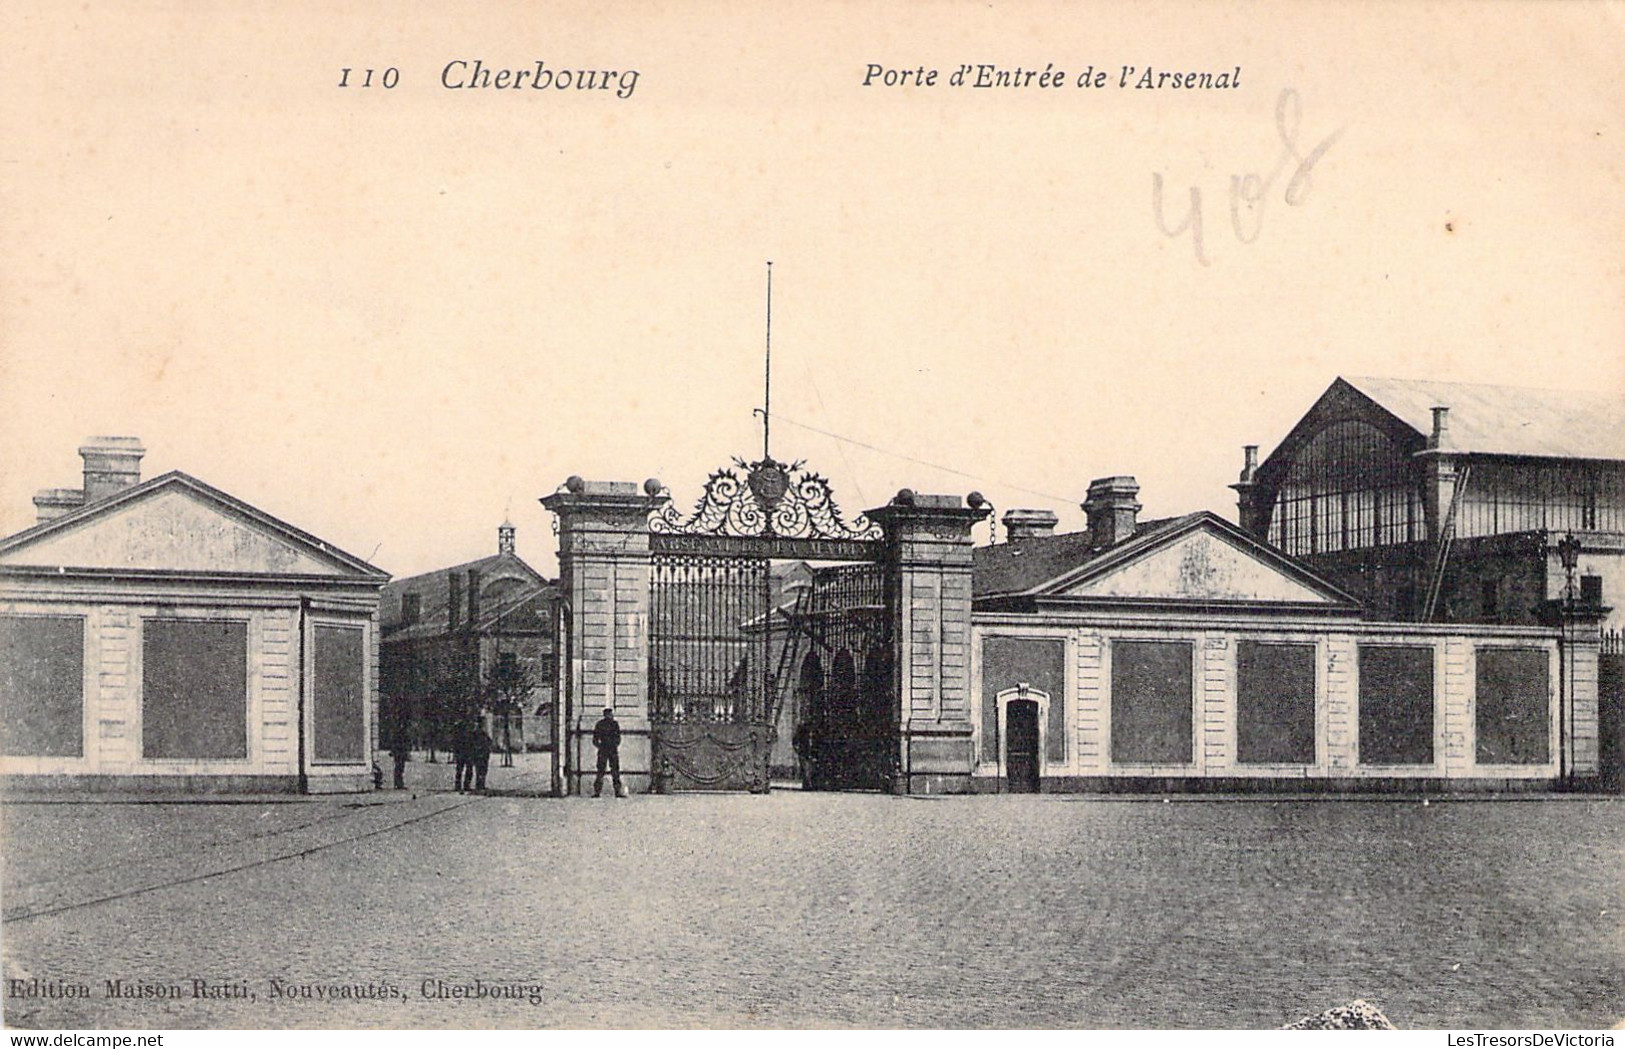 MILITARIA - CHERBOURG - Porte D'entrée De L'Arsenal - Edition Maison Ratti - Carte Postale Ancienne - Caserme